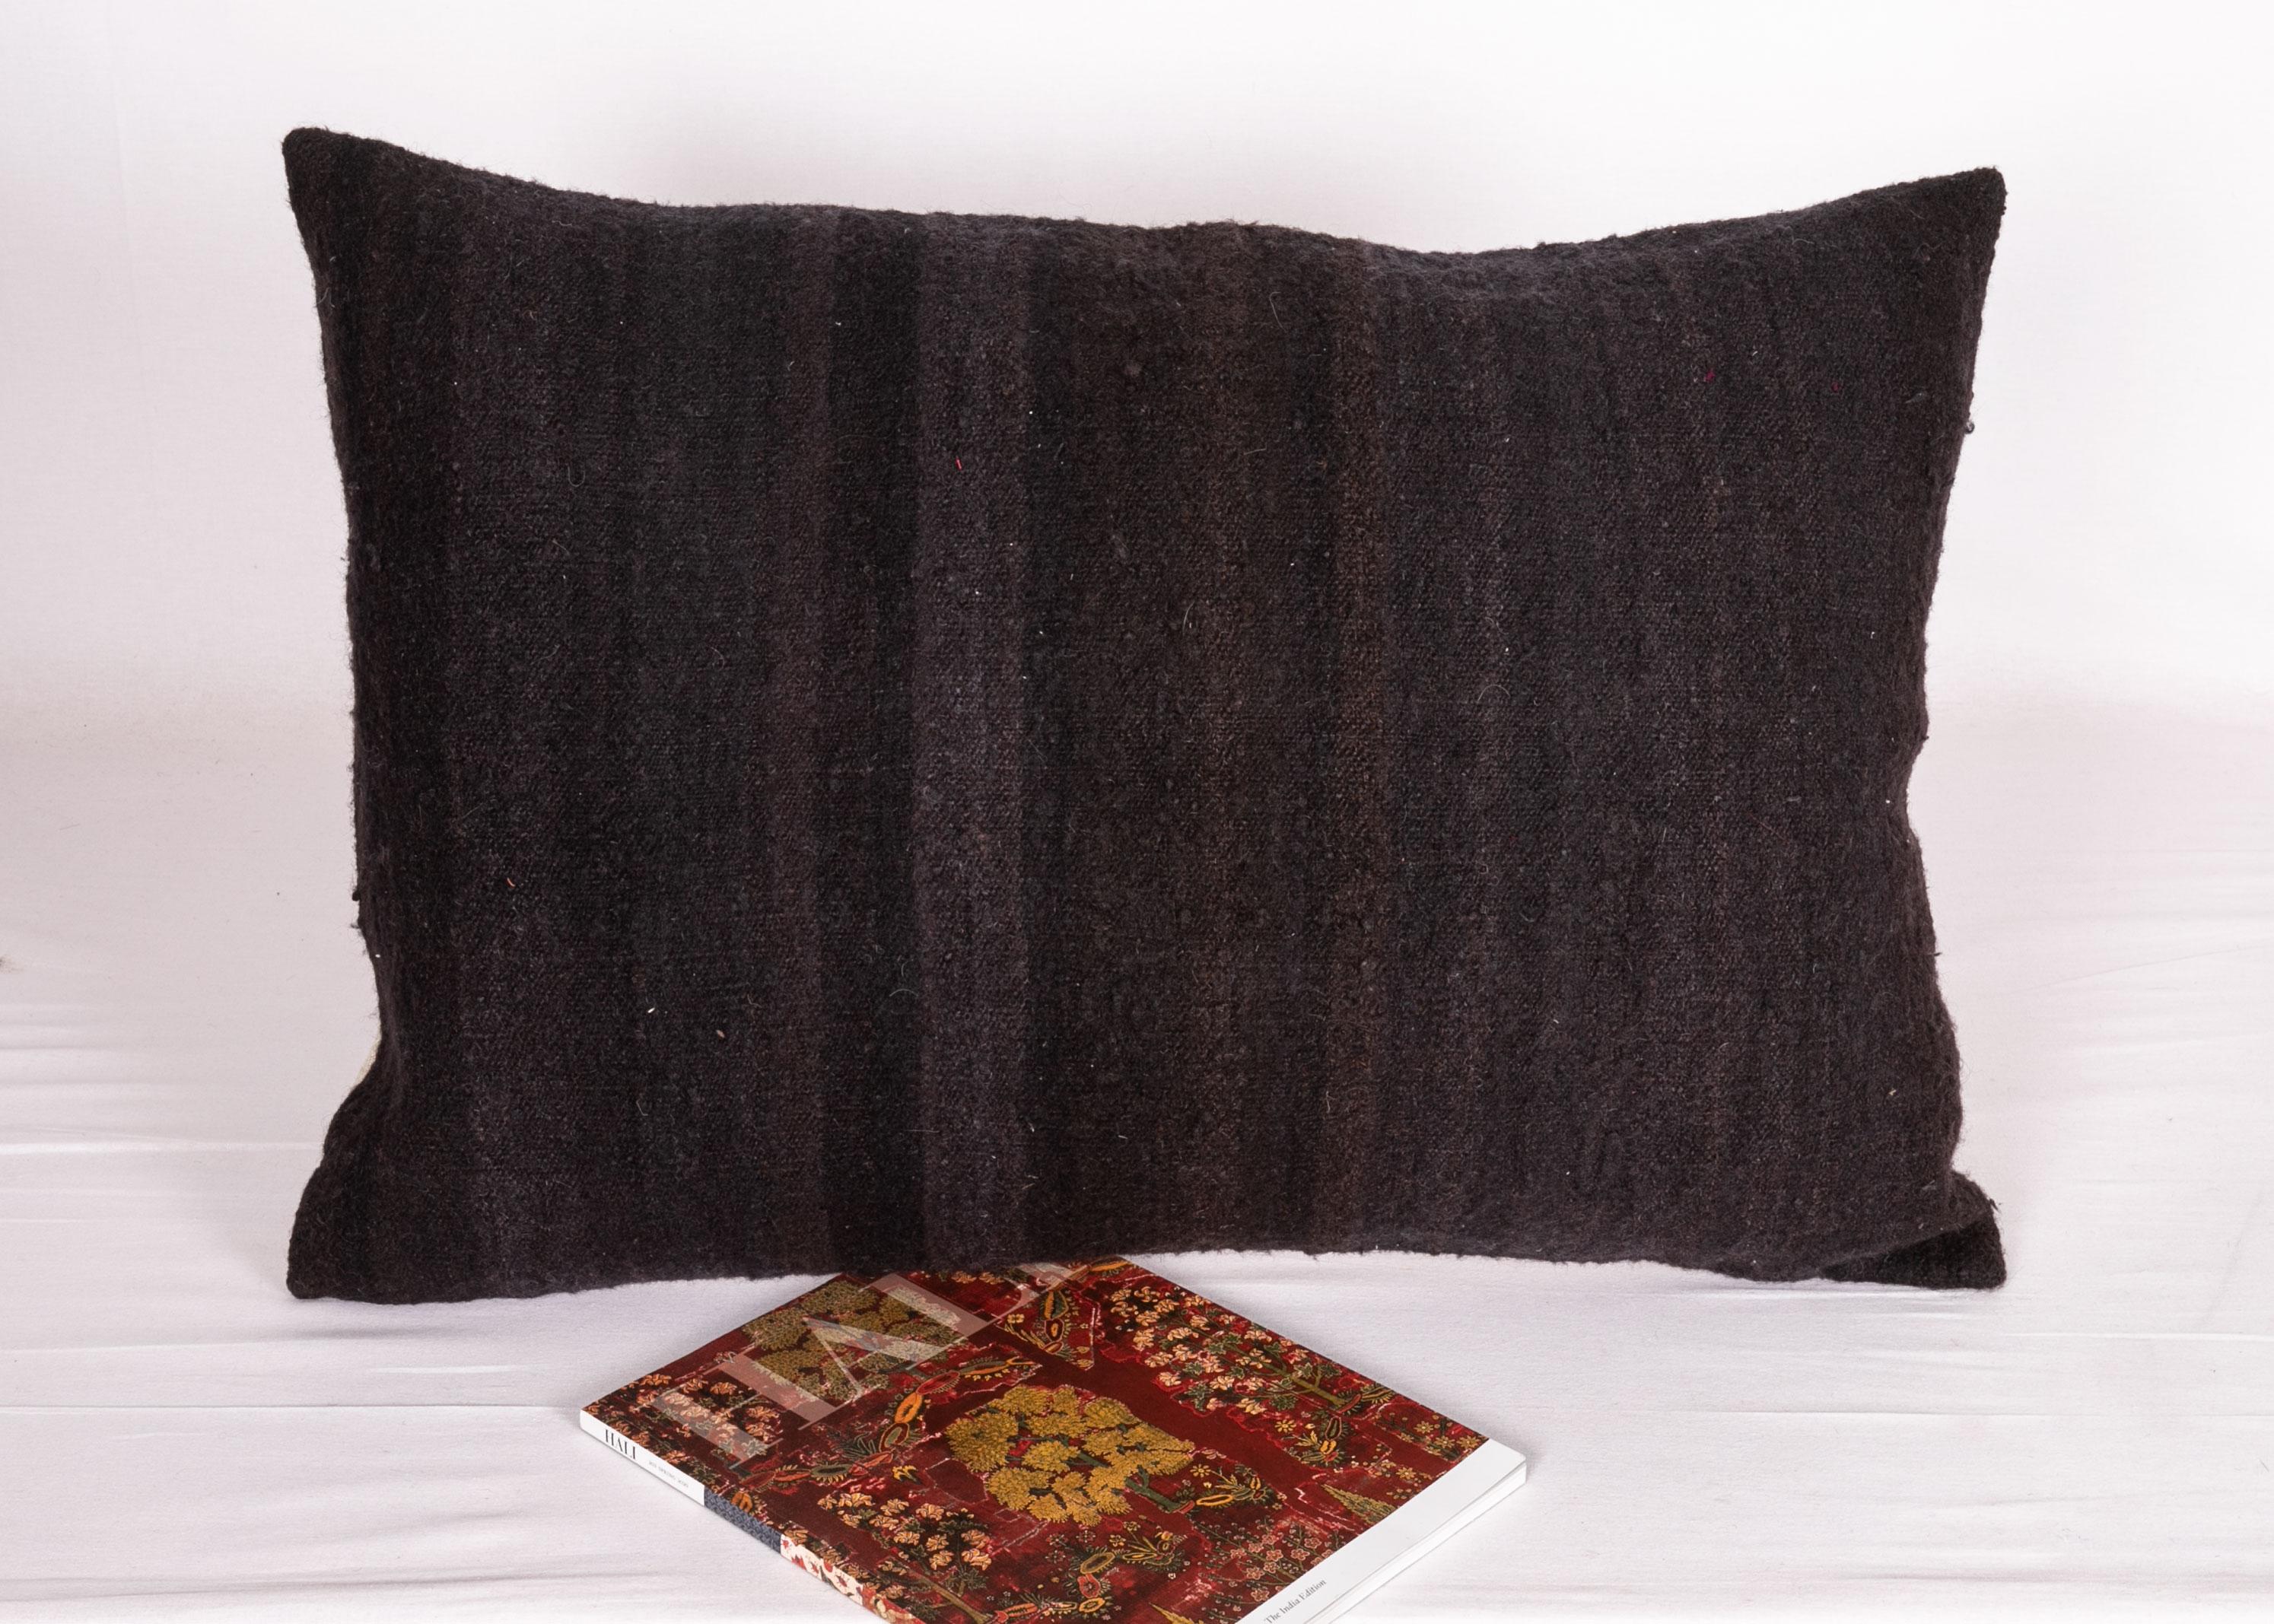 Turkish Black Pillow Covers Made from a Mıd 20th C. Turkısh Kilim